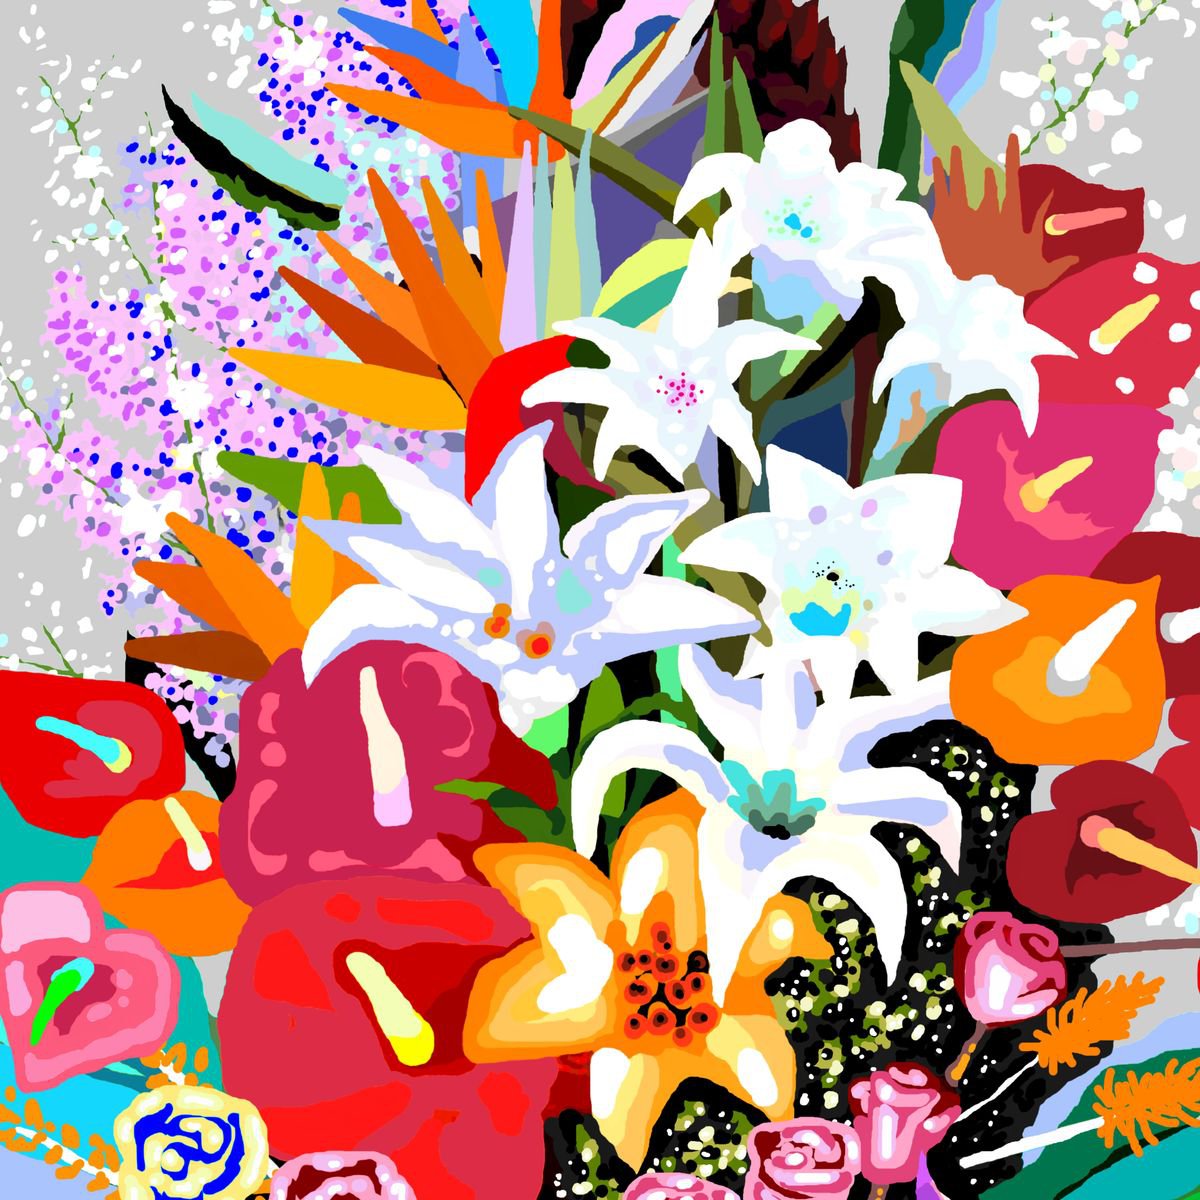 Flowers III-B/ Flores III-B (pop art, floral) by Alejos